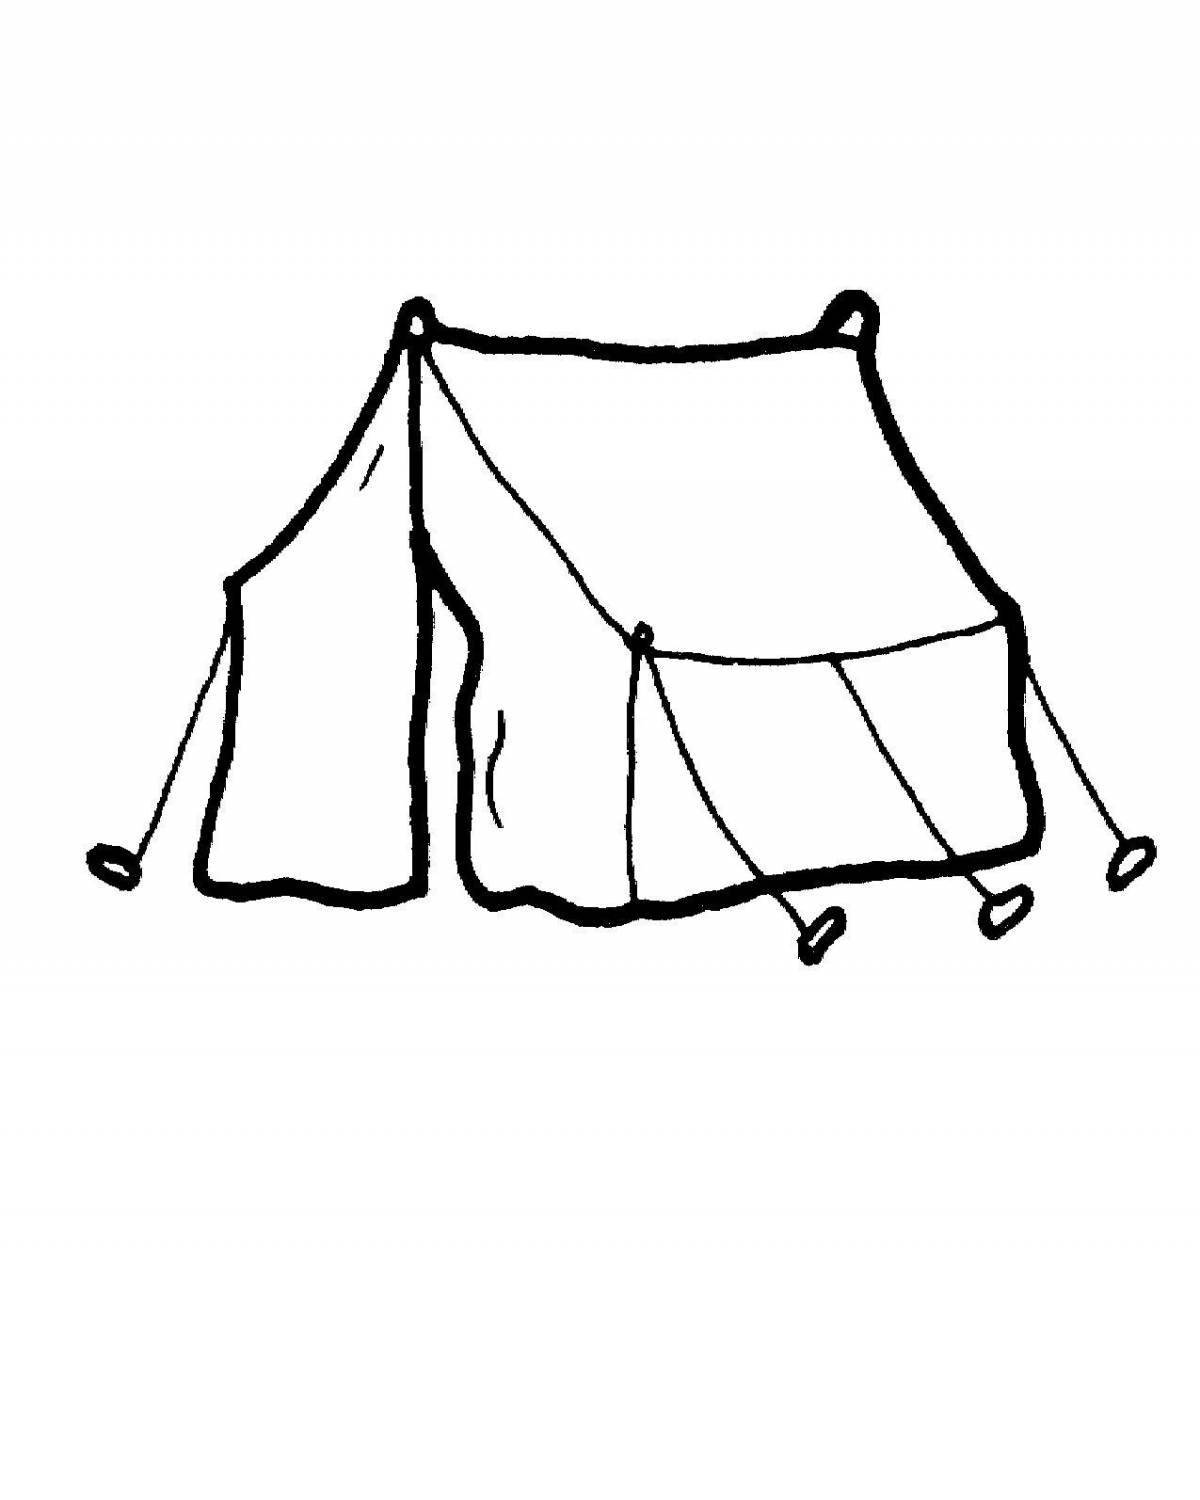 Палатка для детей #3